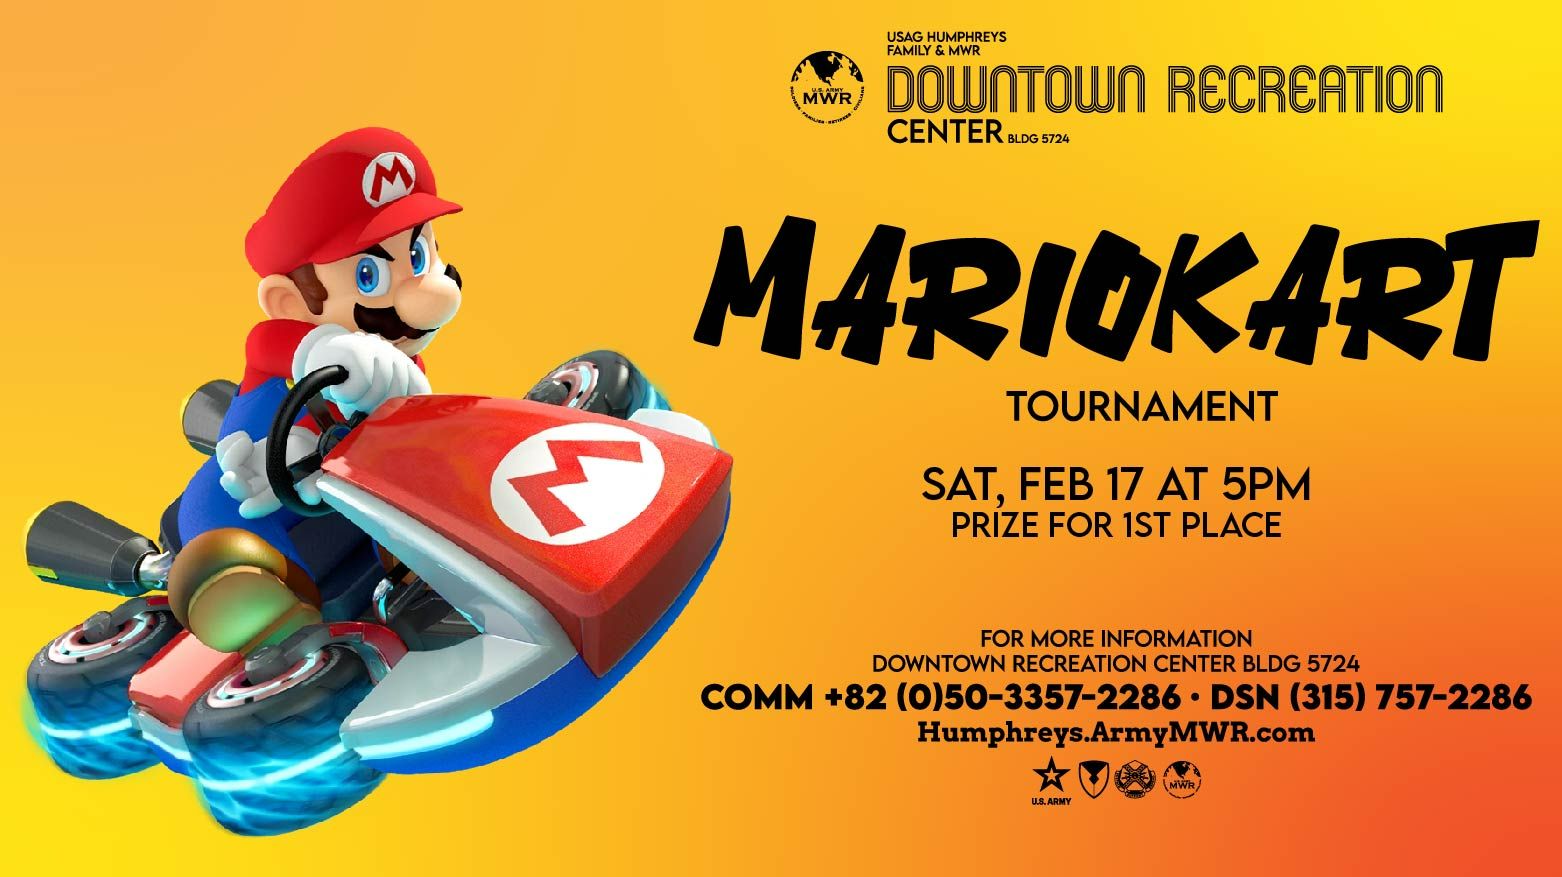 Mario Kart Tournament Flyer by chammy3760 on DeviantArt